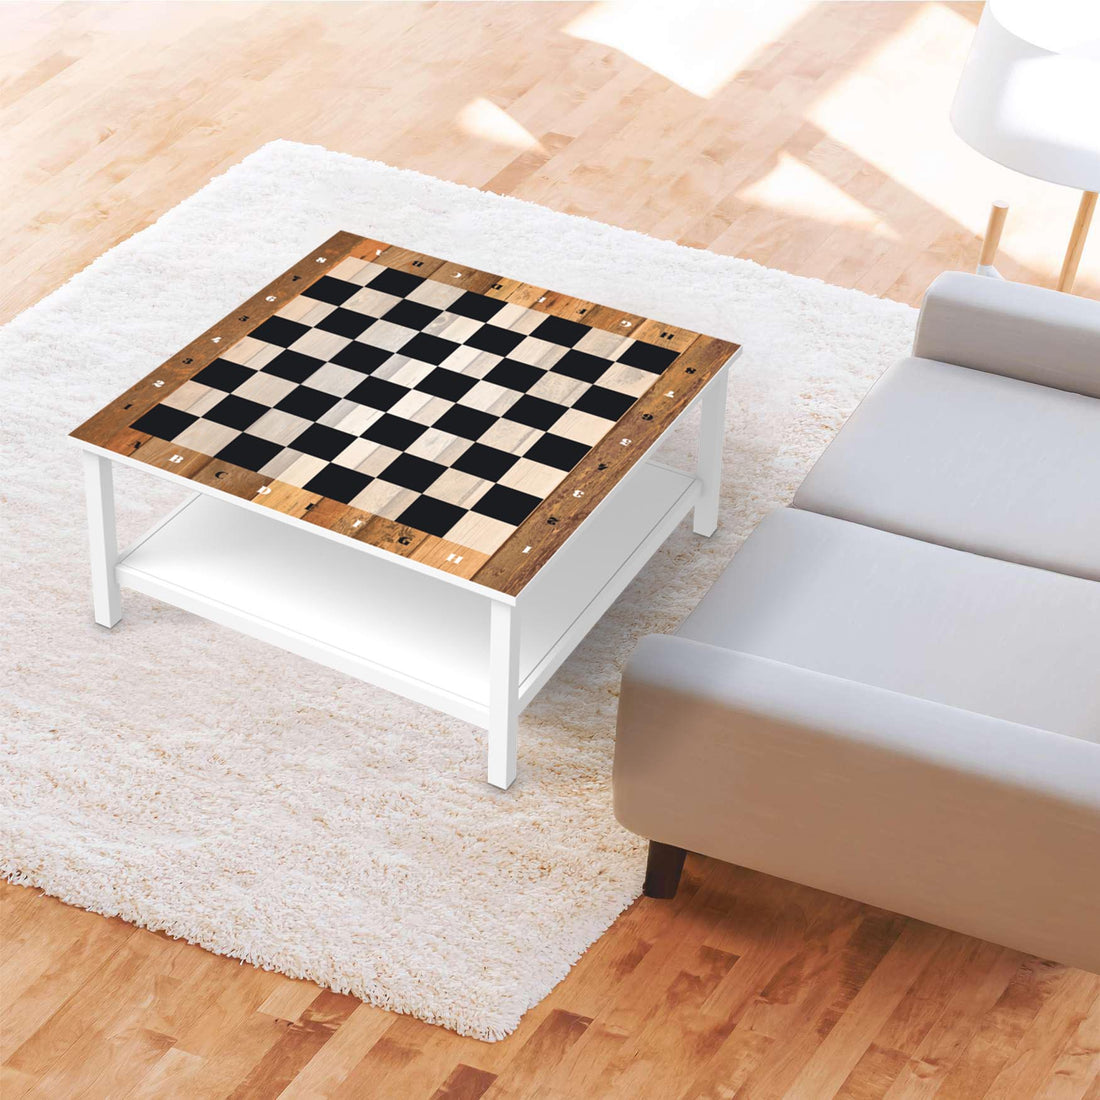 Klebefolie für Möbel Spieltisch Schach - IKEA Hemnes Couchtisch 90x90 cm - Wohnzimmer